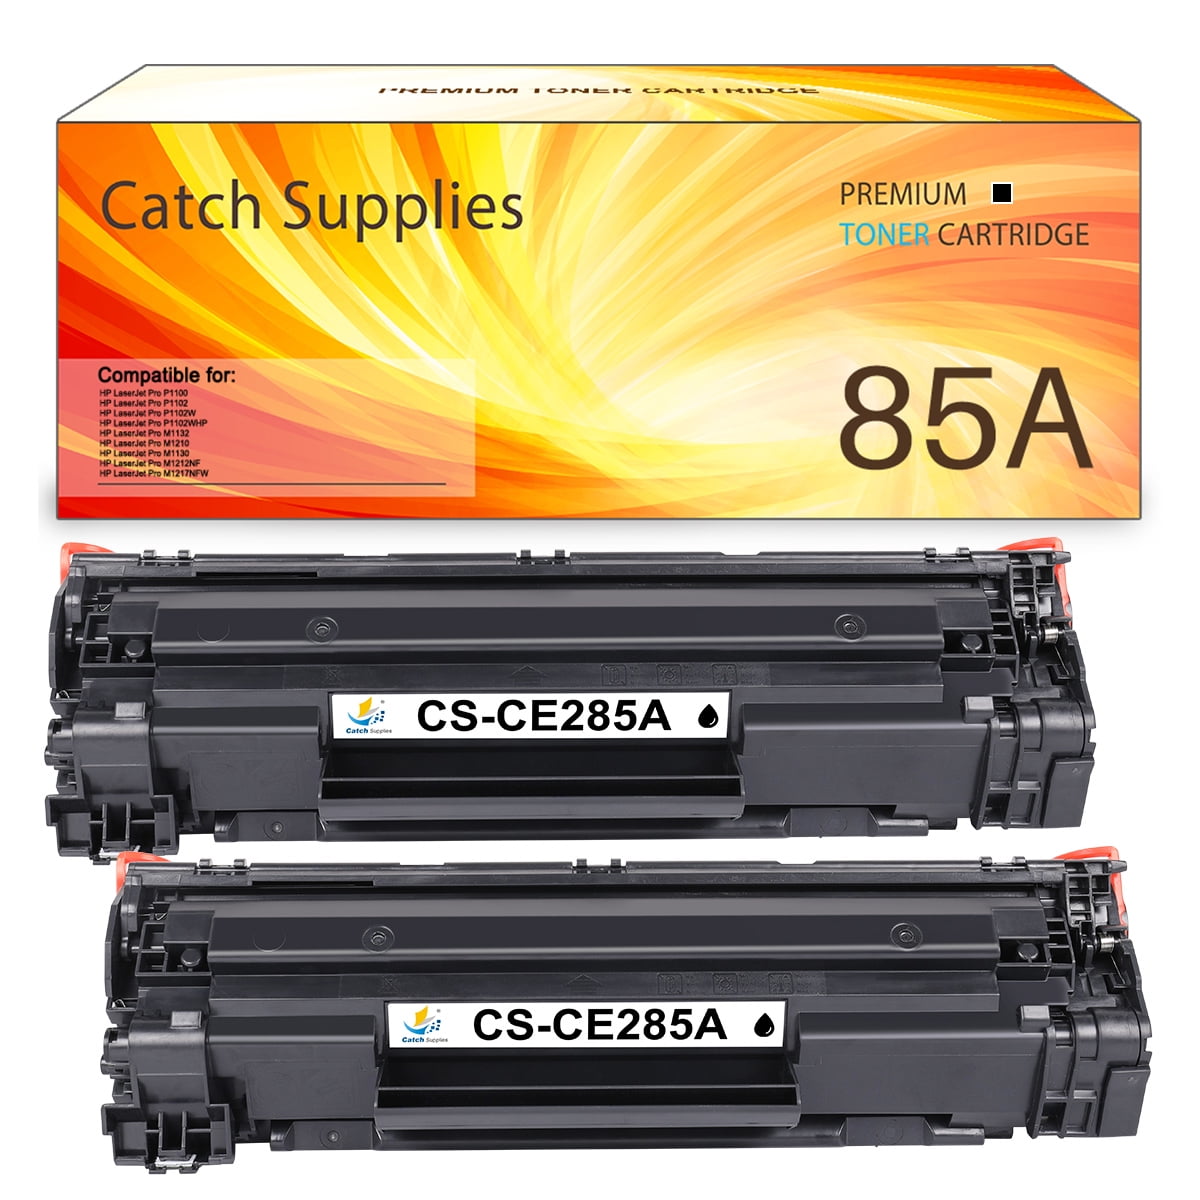 vulkansk Læring Jeg accepterer det Catch Supplies Compatible toner for HP 85A CE285A Laserjet Pro P1102w  M1212nf MFP P1102 P1109w M1217nfw 1102w Printer Ink (Black, 2-Pack) -  Walmart.com